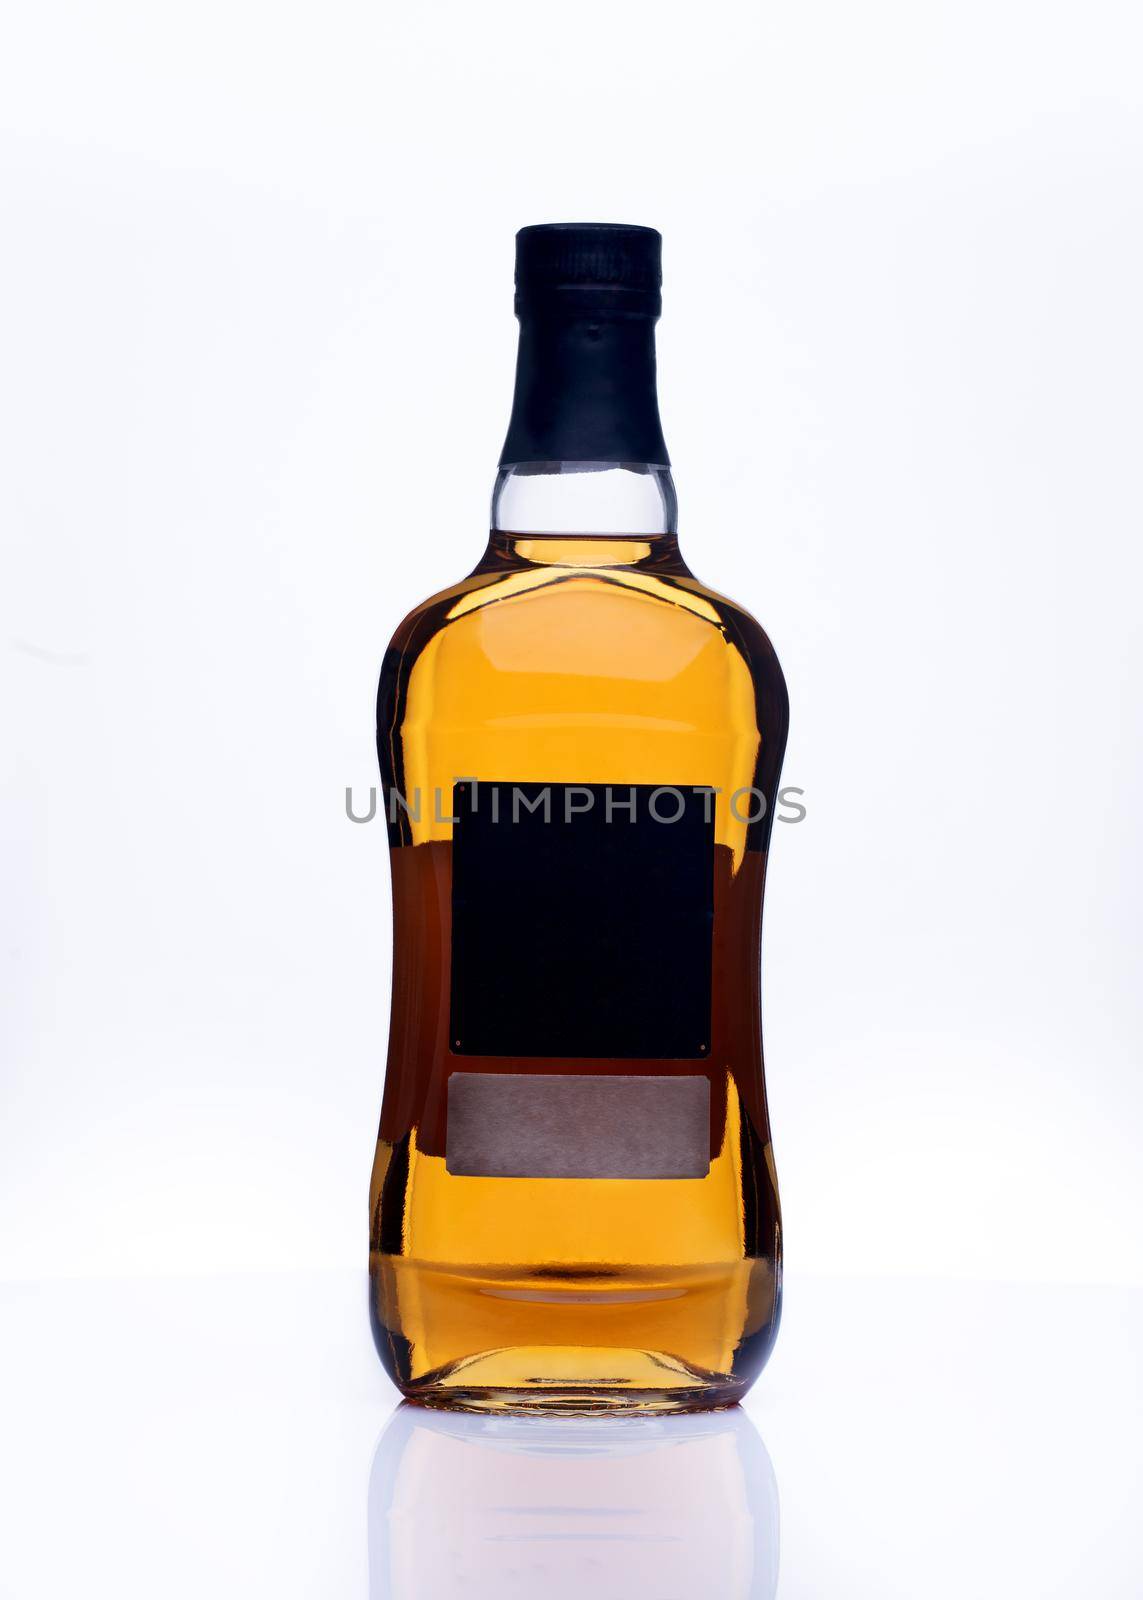 bottle of whiskey on white background